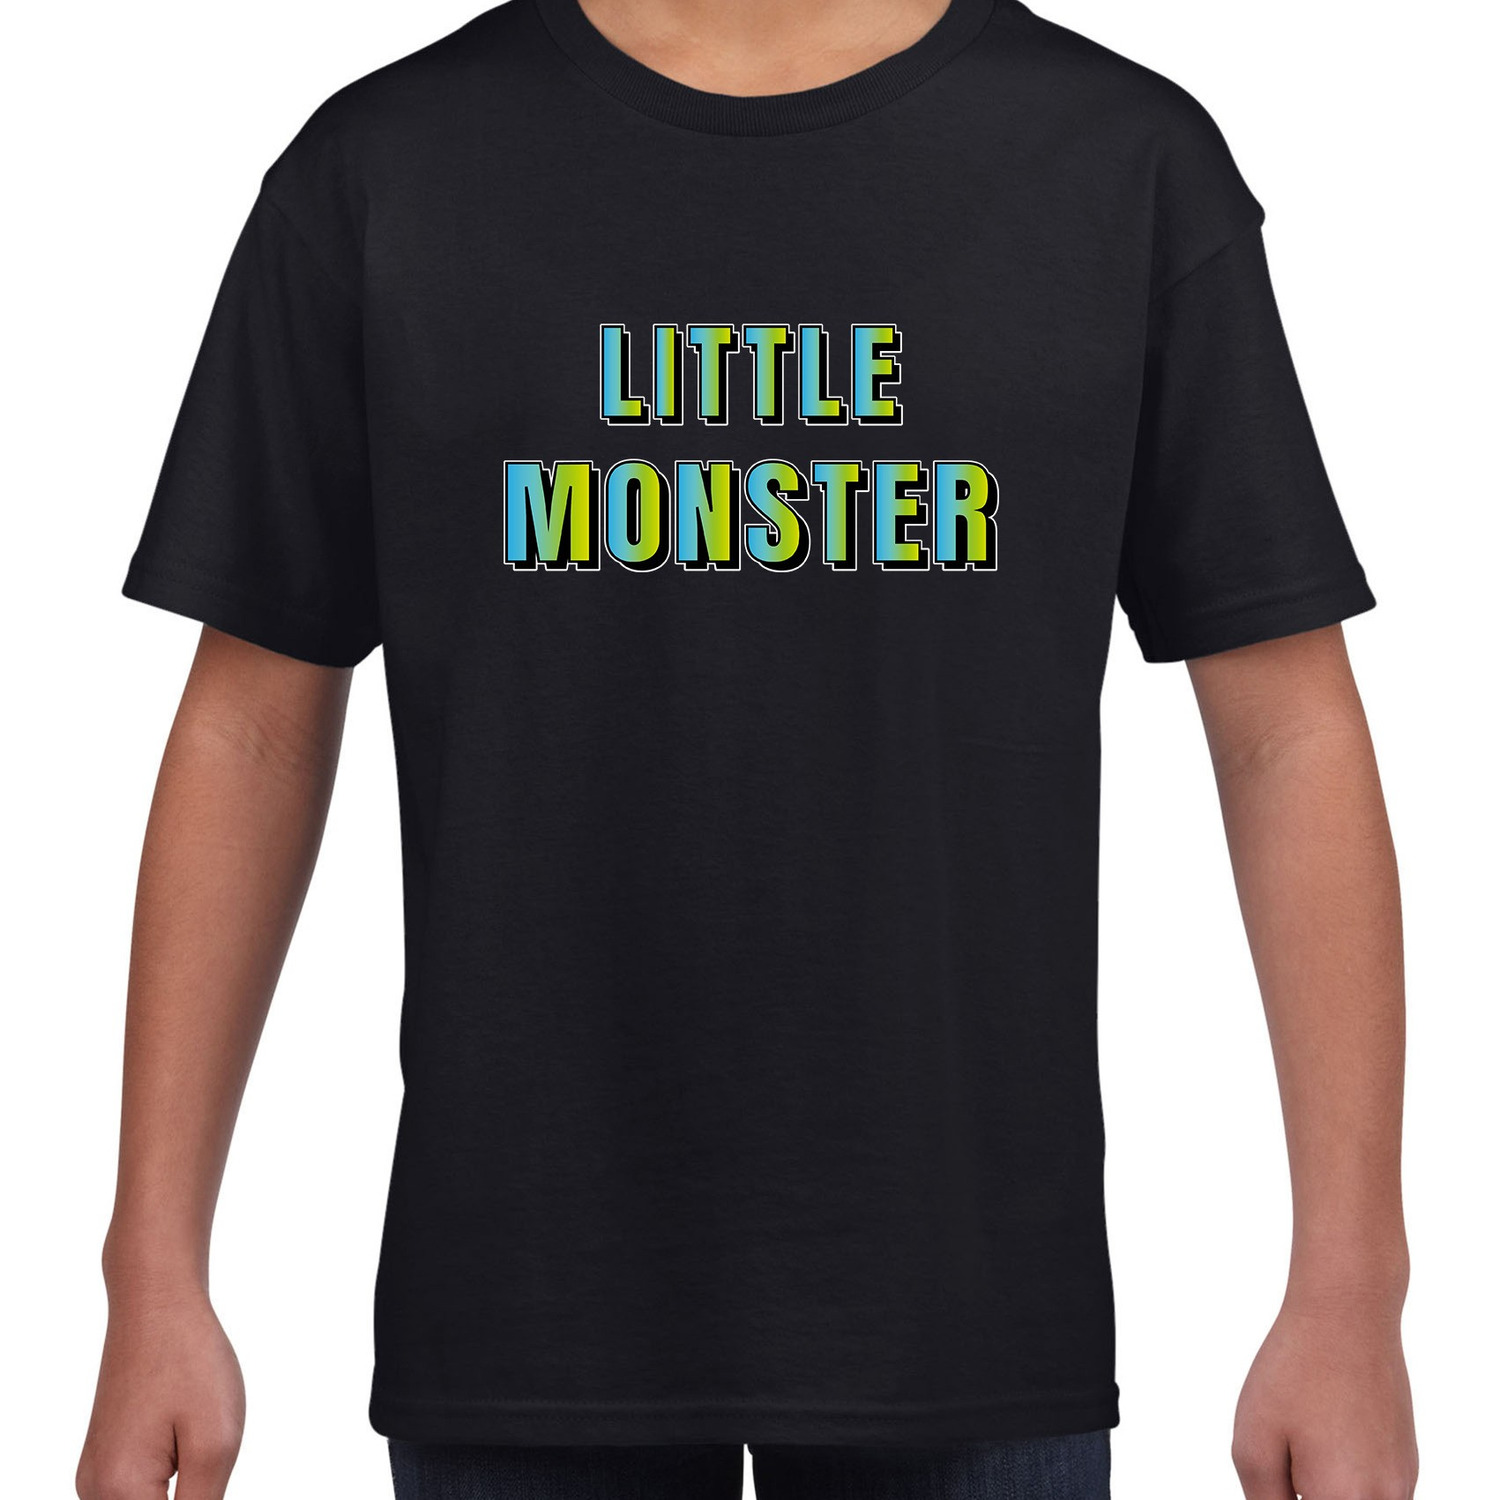 Little monster fun tekst t-shirt zwart kids